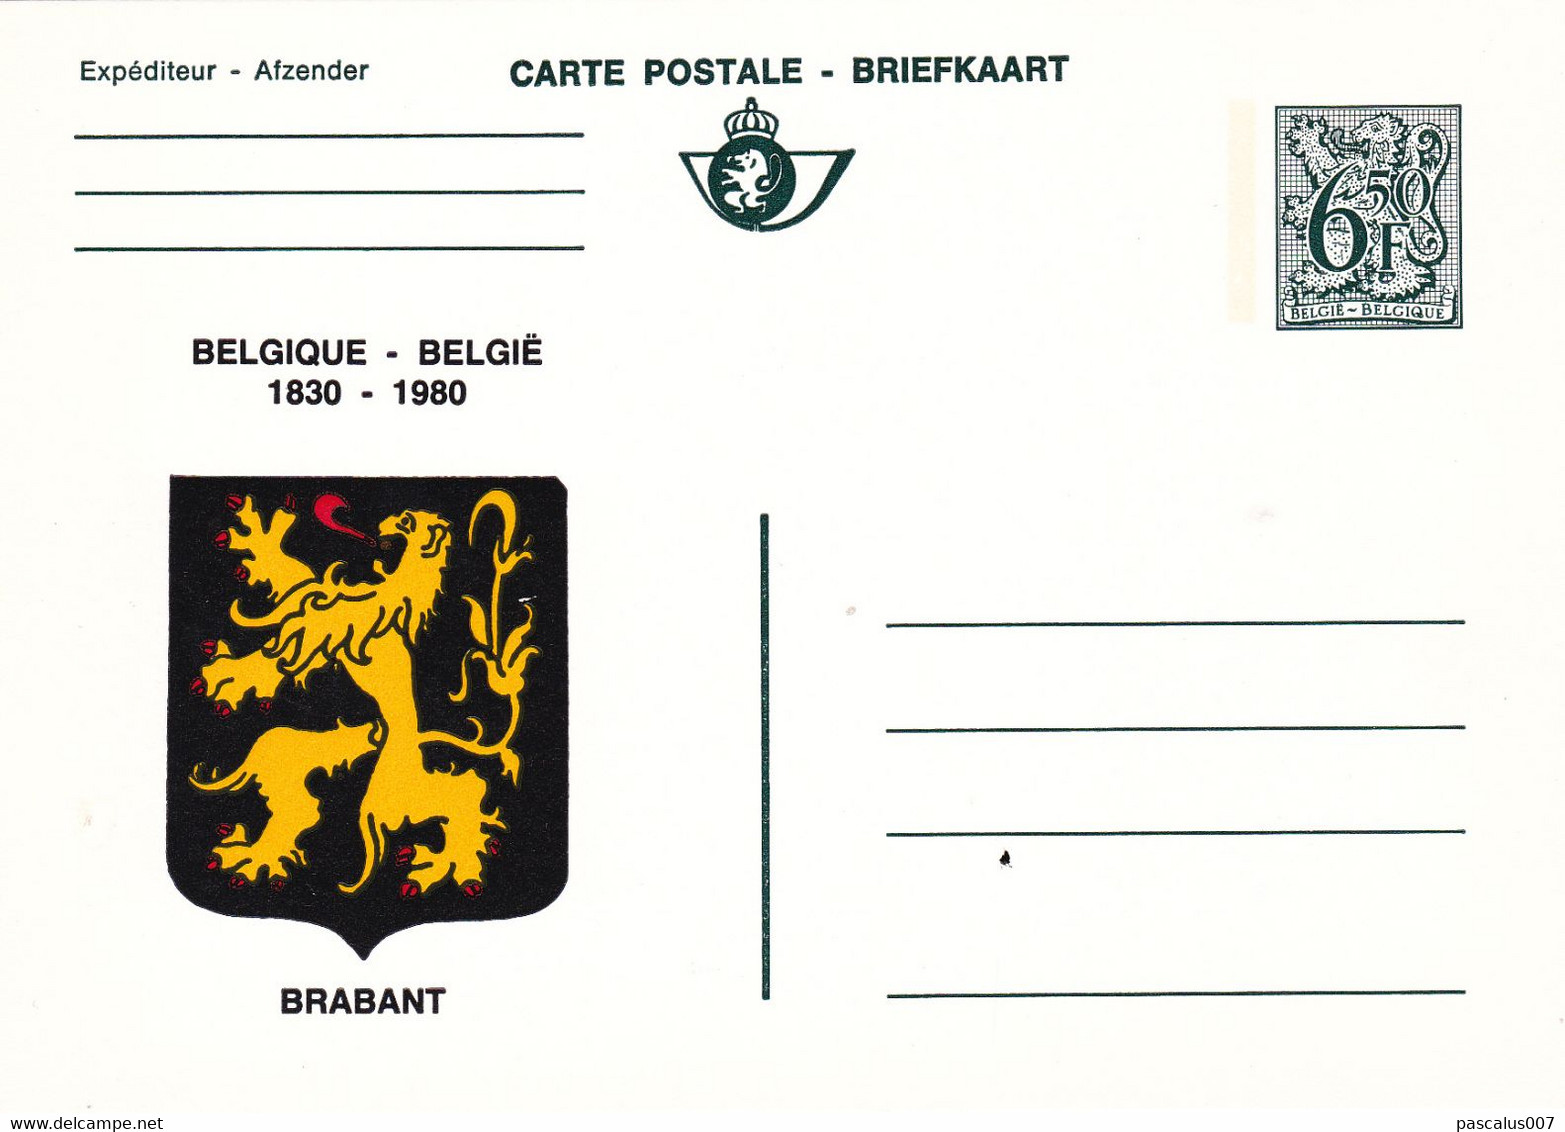 B01-198 AP - Entier Postal - 11 Cartes Postales 10Neuves 1 Carte Usagée 9€ - Avis Changement Adresse